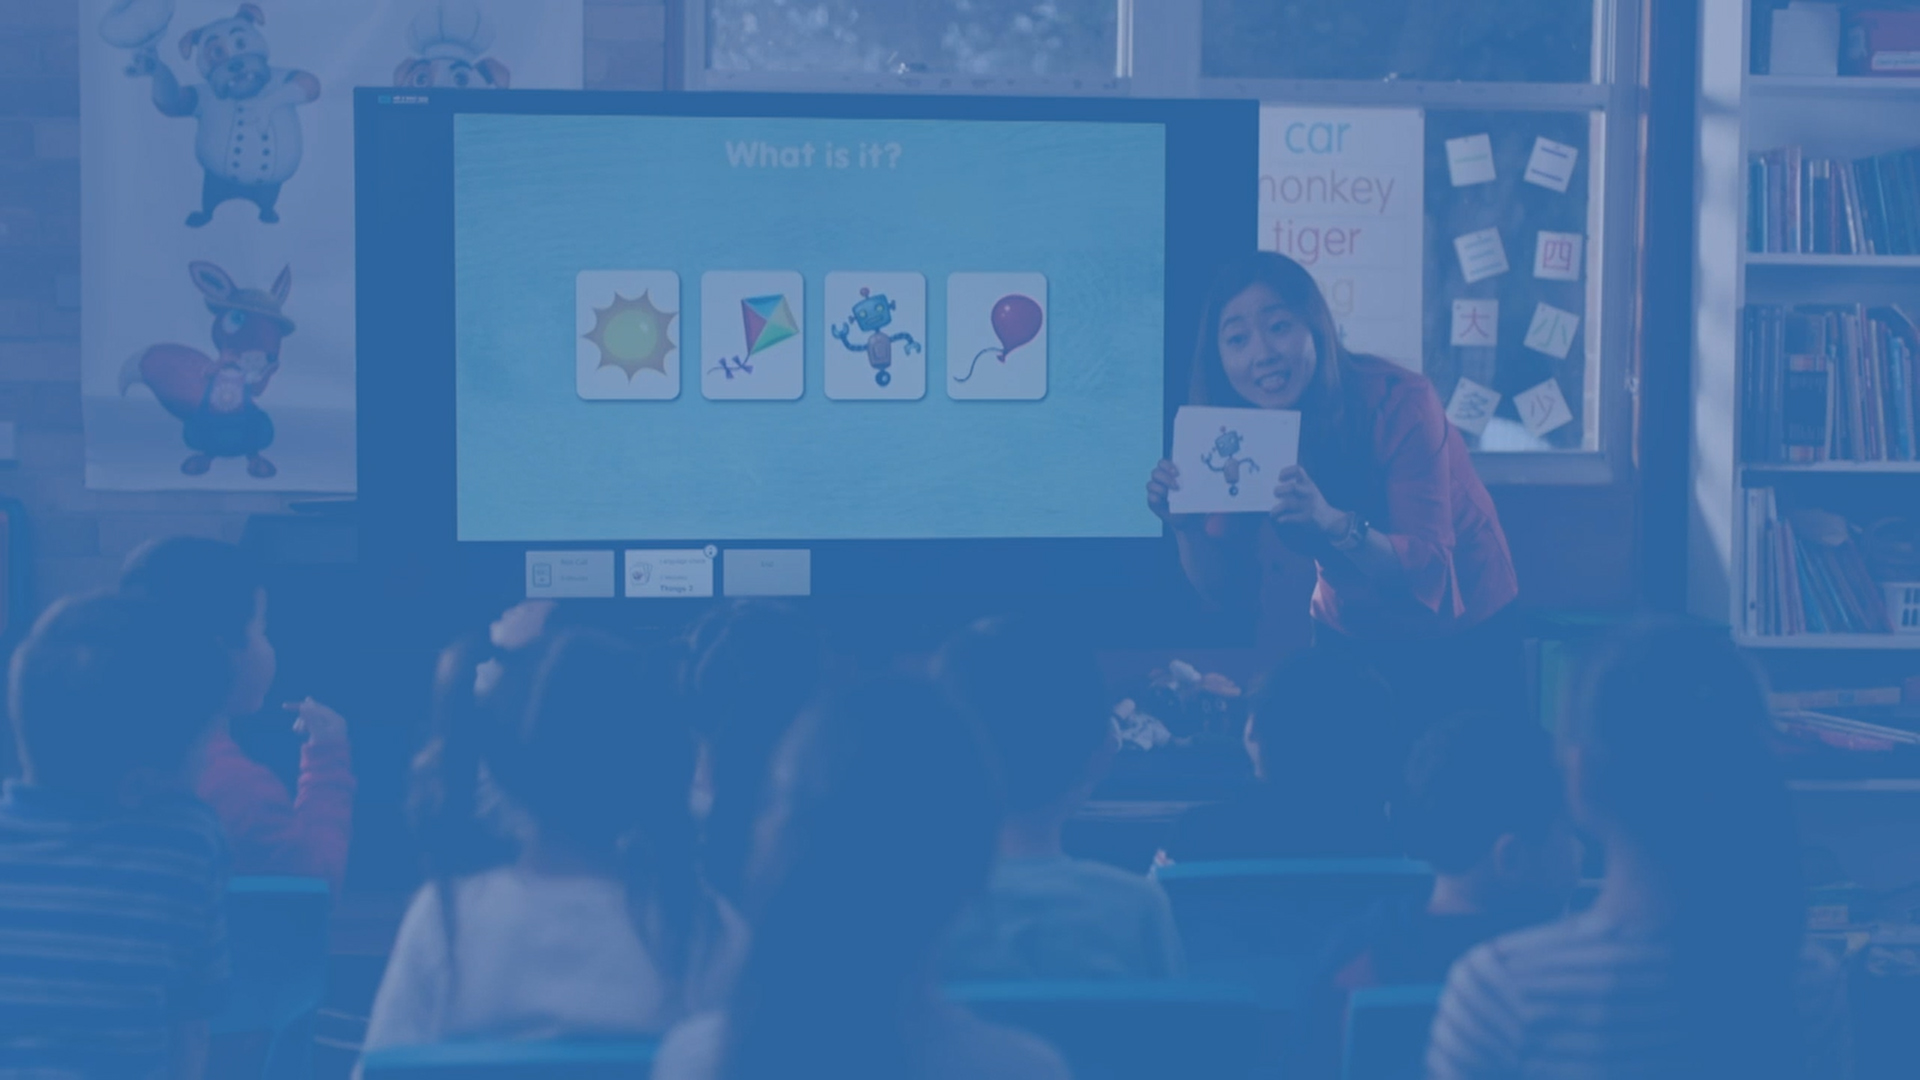 RoyalABC là một phương pháp giảng dạy tiếng Anh hiệu quả cho trẻ em. Với công nghệ tiên tiến, giáo trình đa dạng và giáo viên tâm huyết, RoyalABC sẽ giúp trẻ em phát triển ngôn ngữ, tăng cường tự tin và yêu thích học tập. Hãy cùng xem hình ảnh liên quan đến RoyalABC để khám phá những bí quyết của phương pháp này!